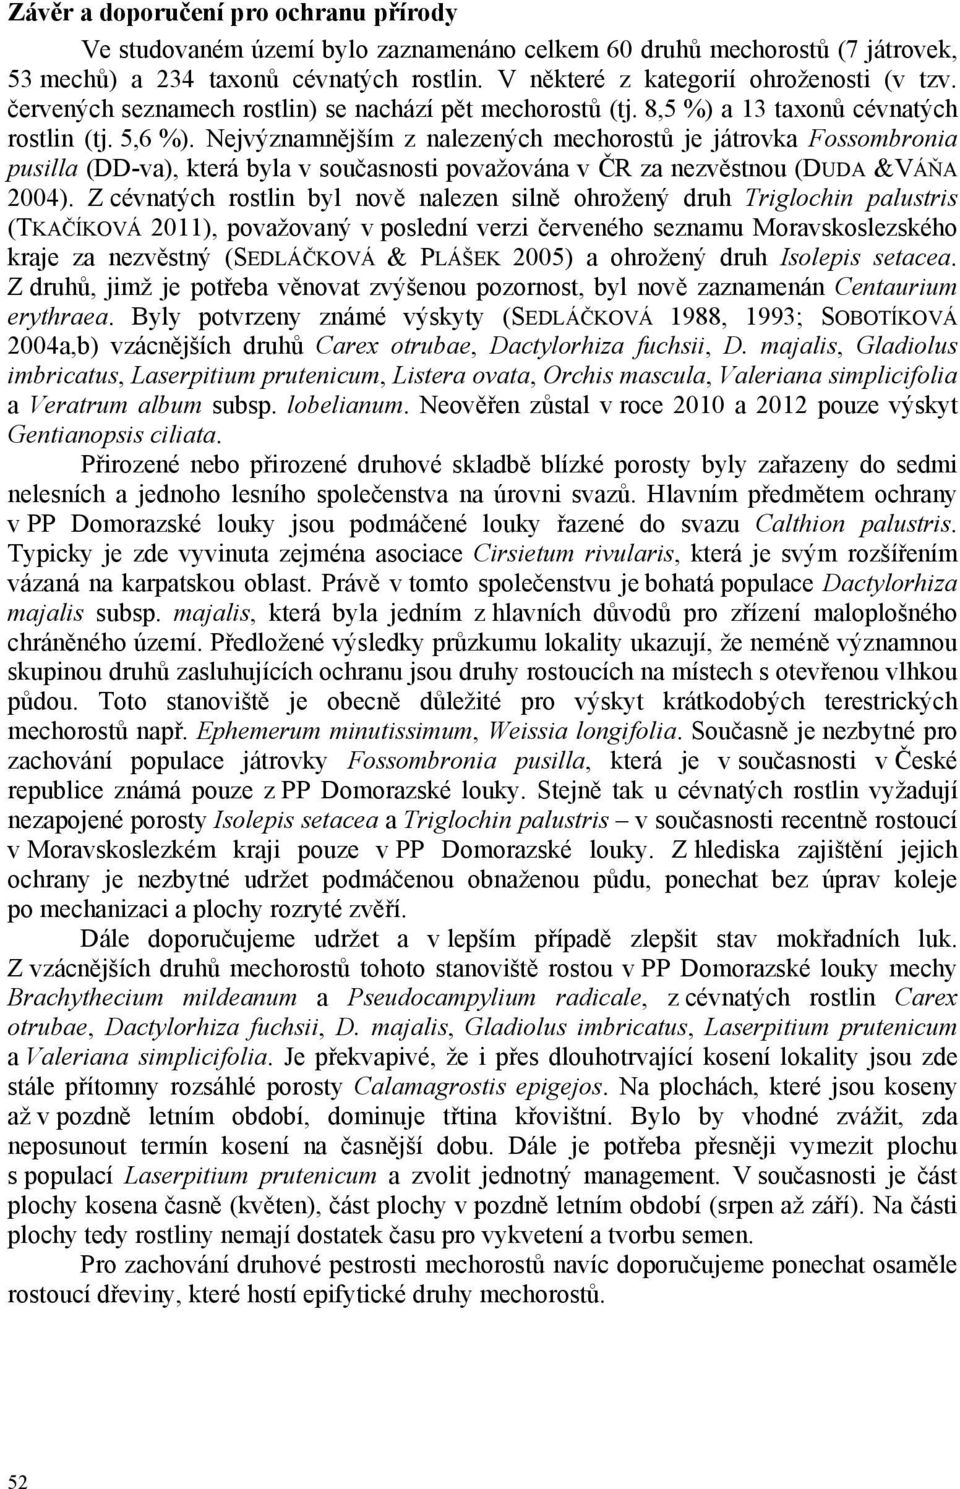 Nejvýznamnějším z nalezených mechorostů je játrovka Fossombronia pusilla (DD-va), která byla v současnosti považována v ČR za nezvěstnou (DUDA &VÁŇA 2004).